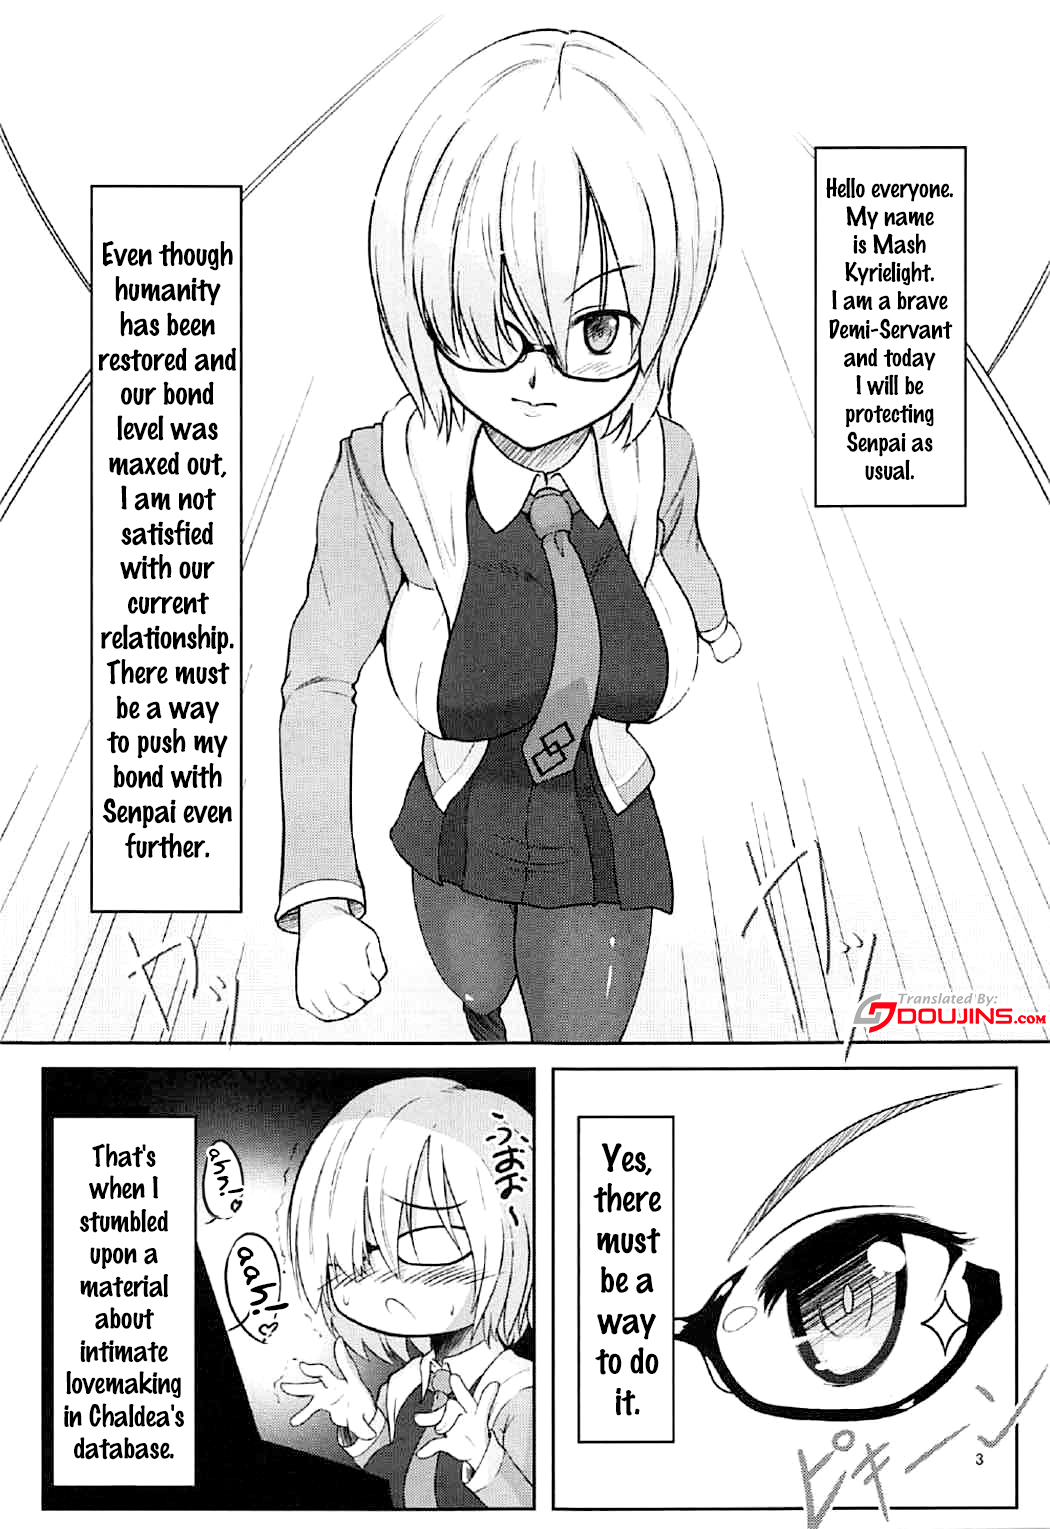 (C92) [LeimkissA (Nekohane Ryou)] Kizuna up to up Mash!! (Fate/Grand Order) [English] {doujins.com} page 2 full